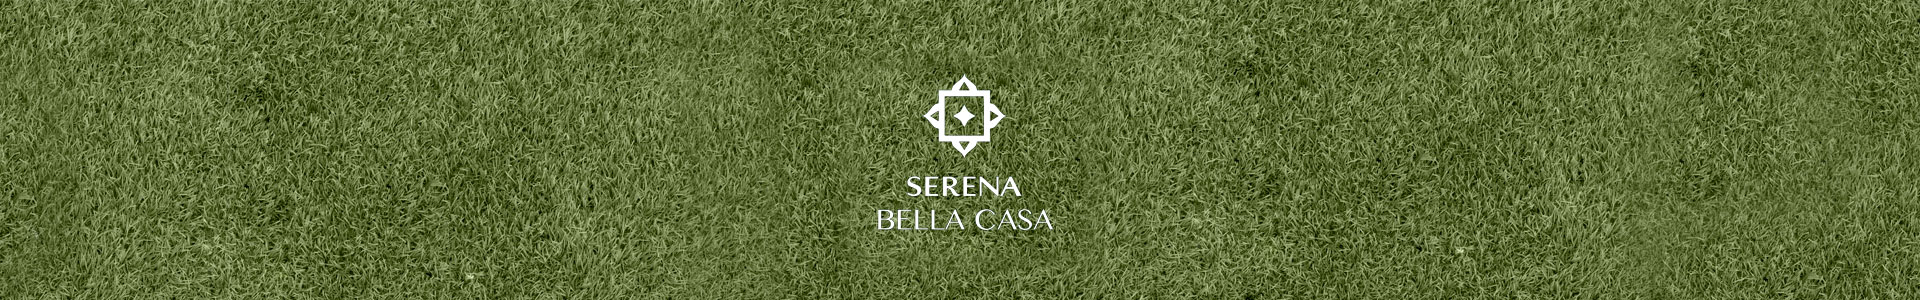 Serena Bella Casa Floor Plan